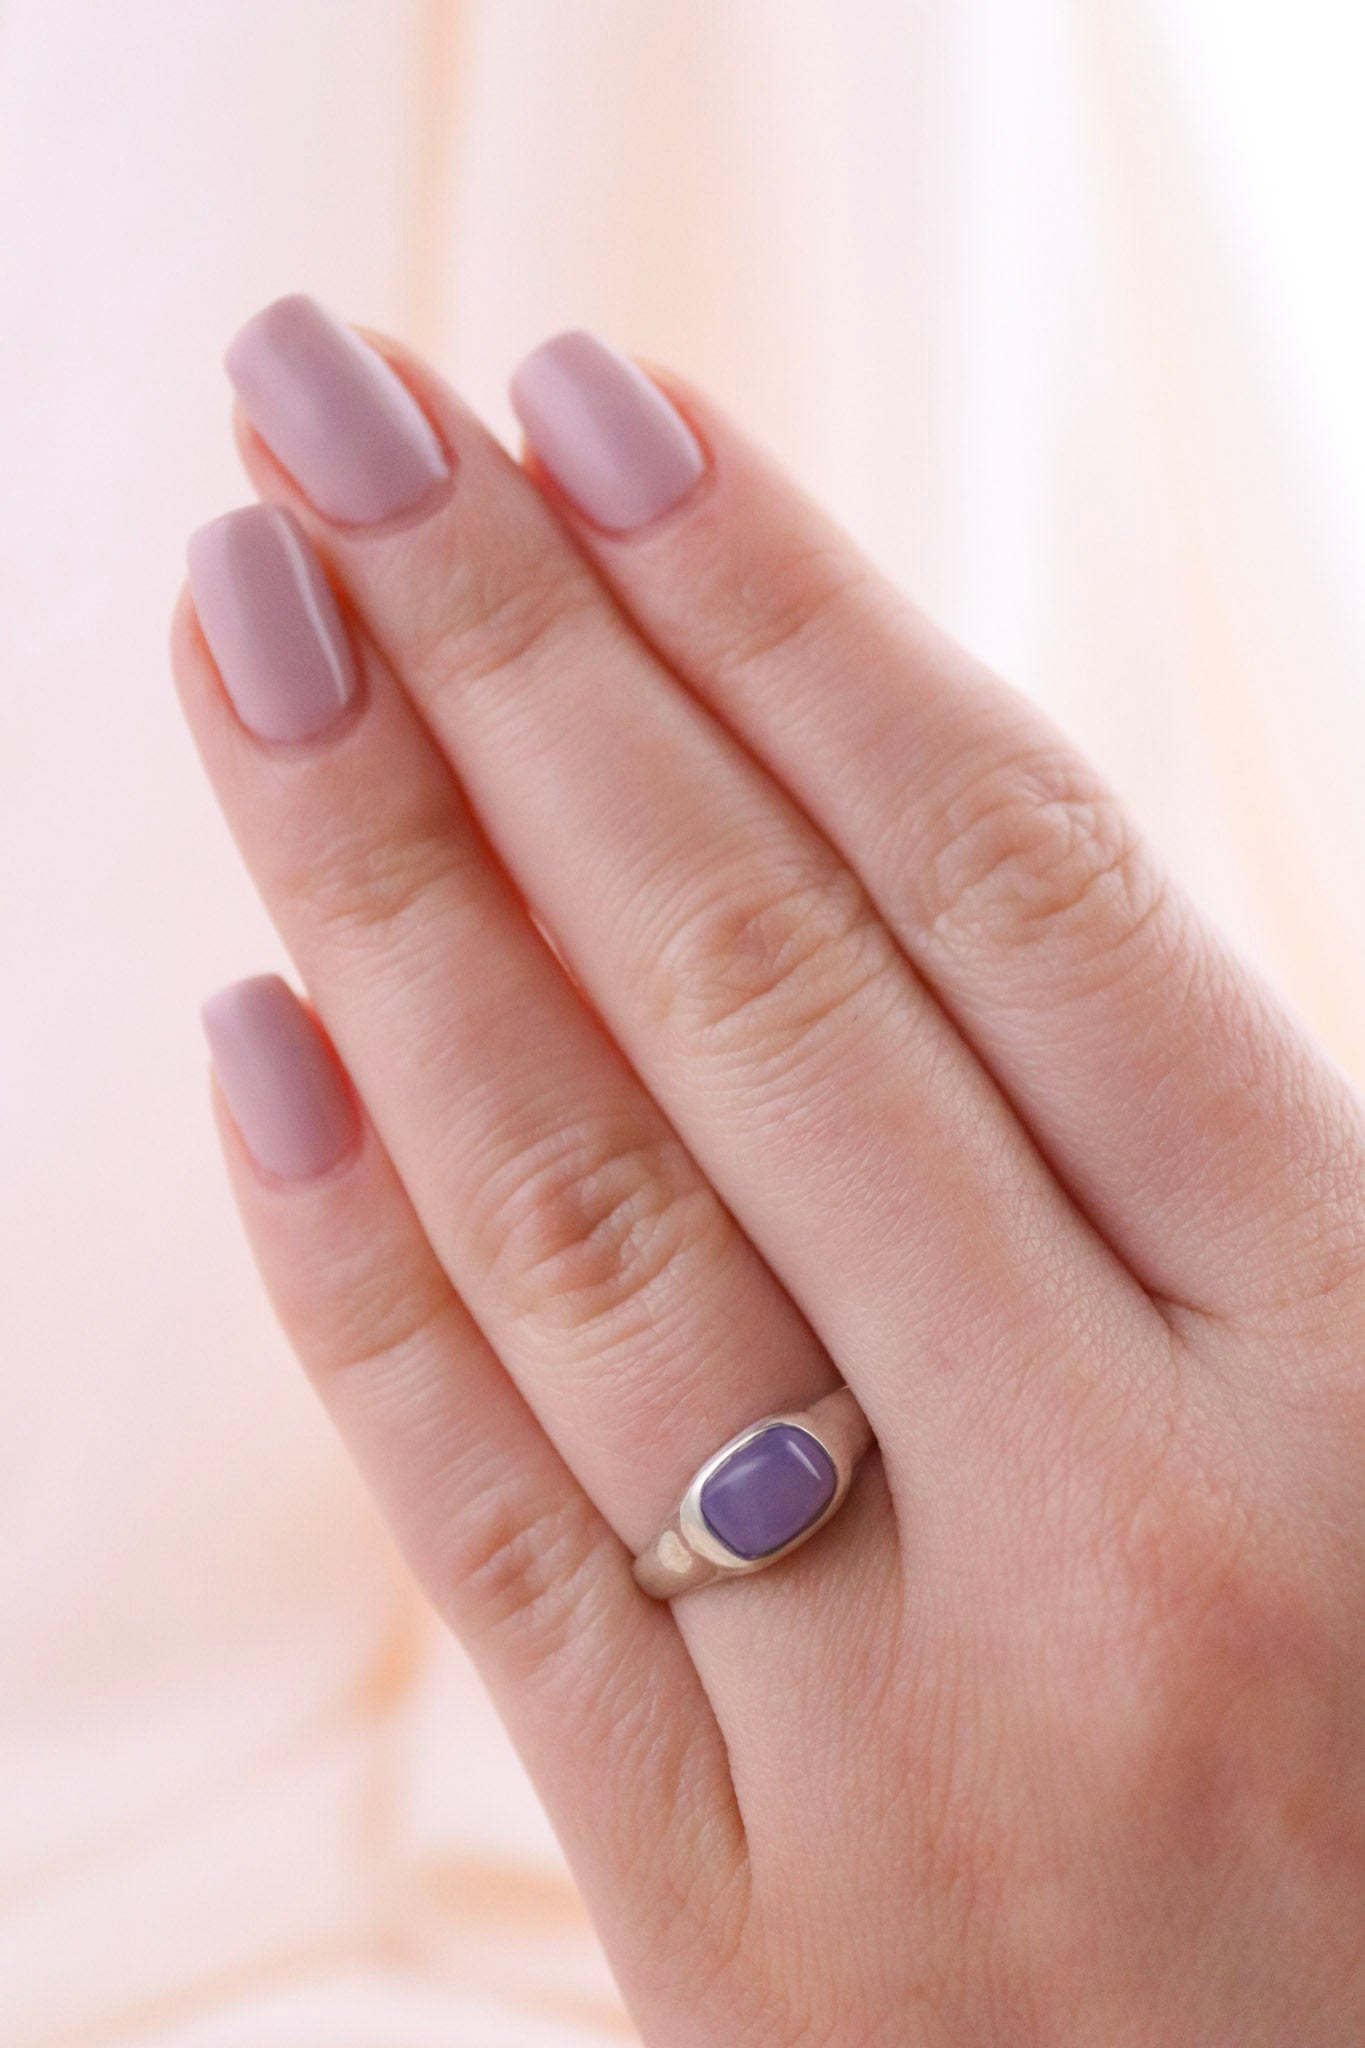 Silver Purple Chalcedony Ring - Kingdom Jewelry